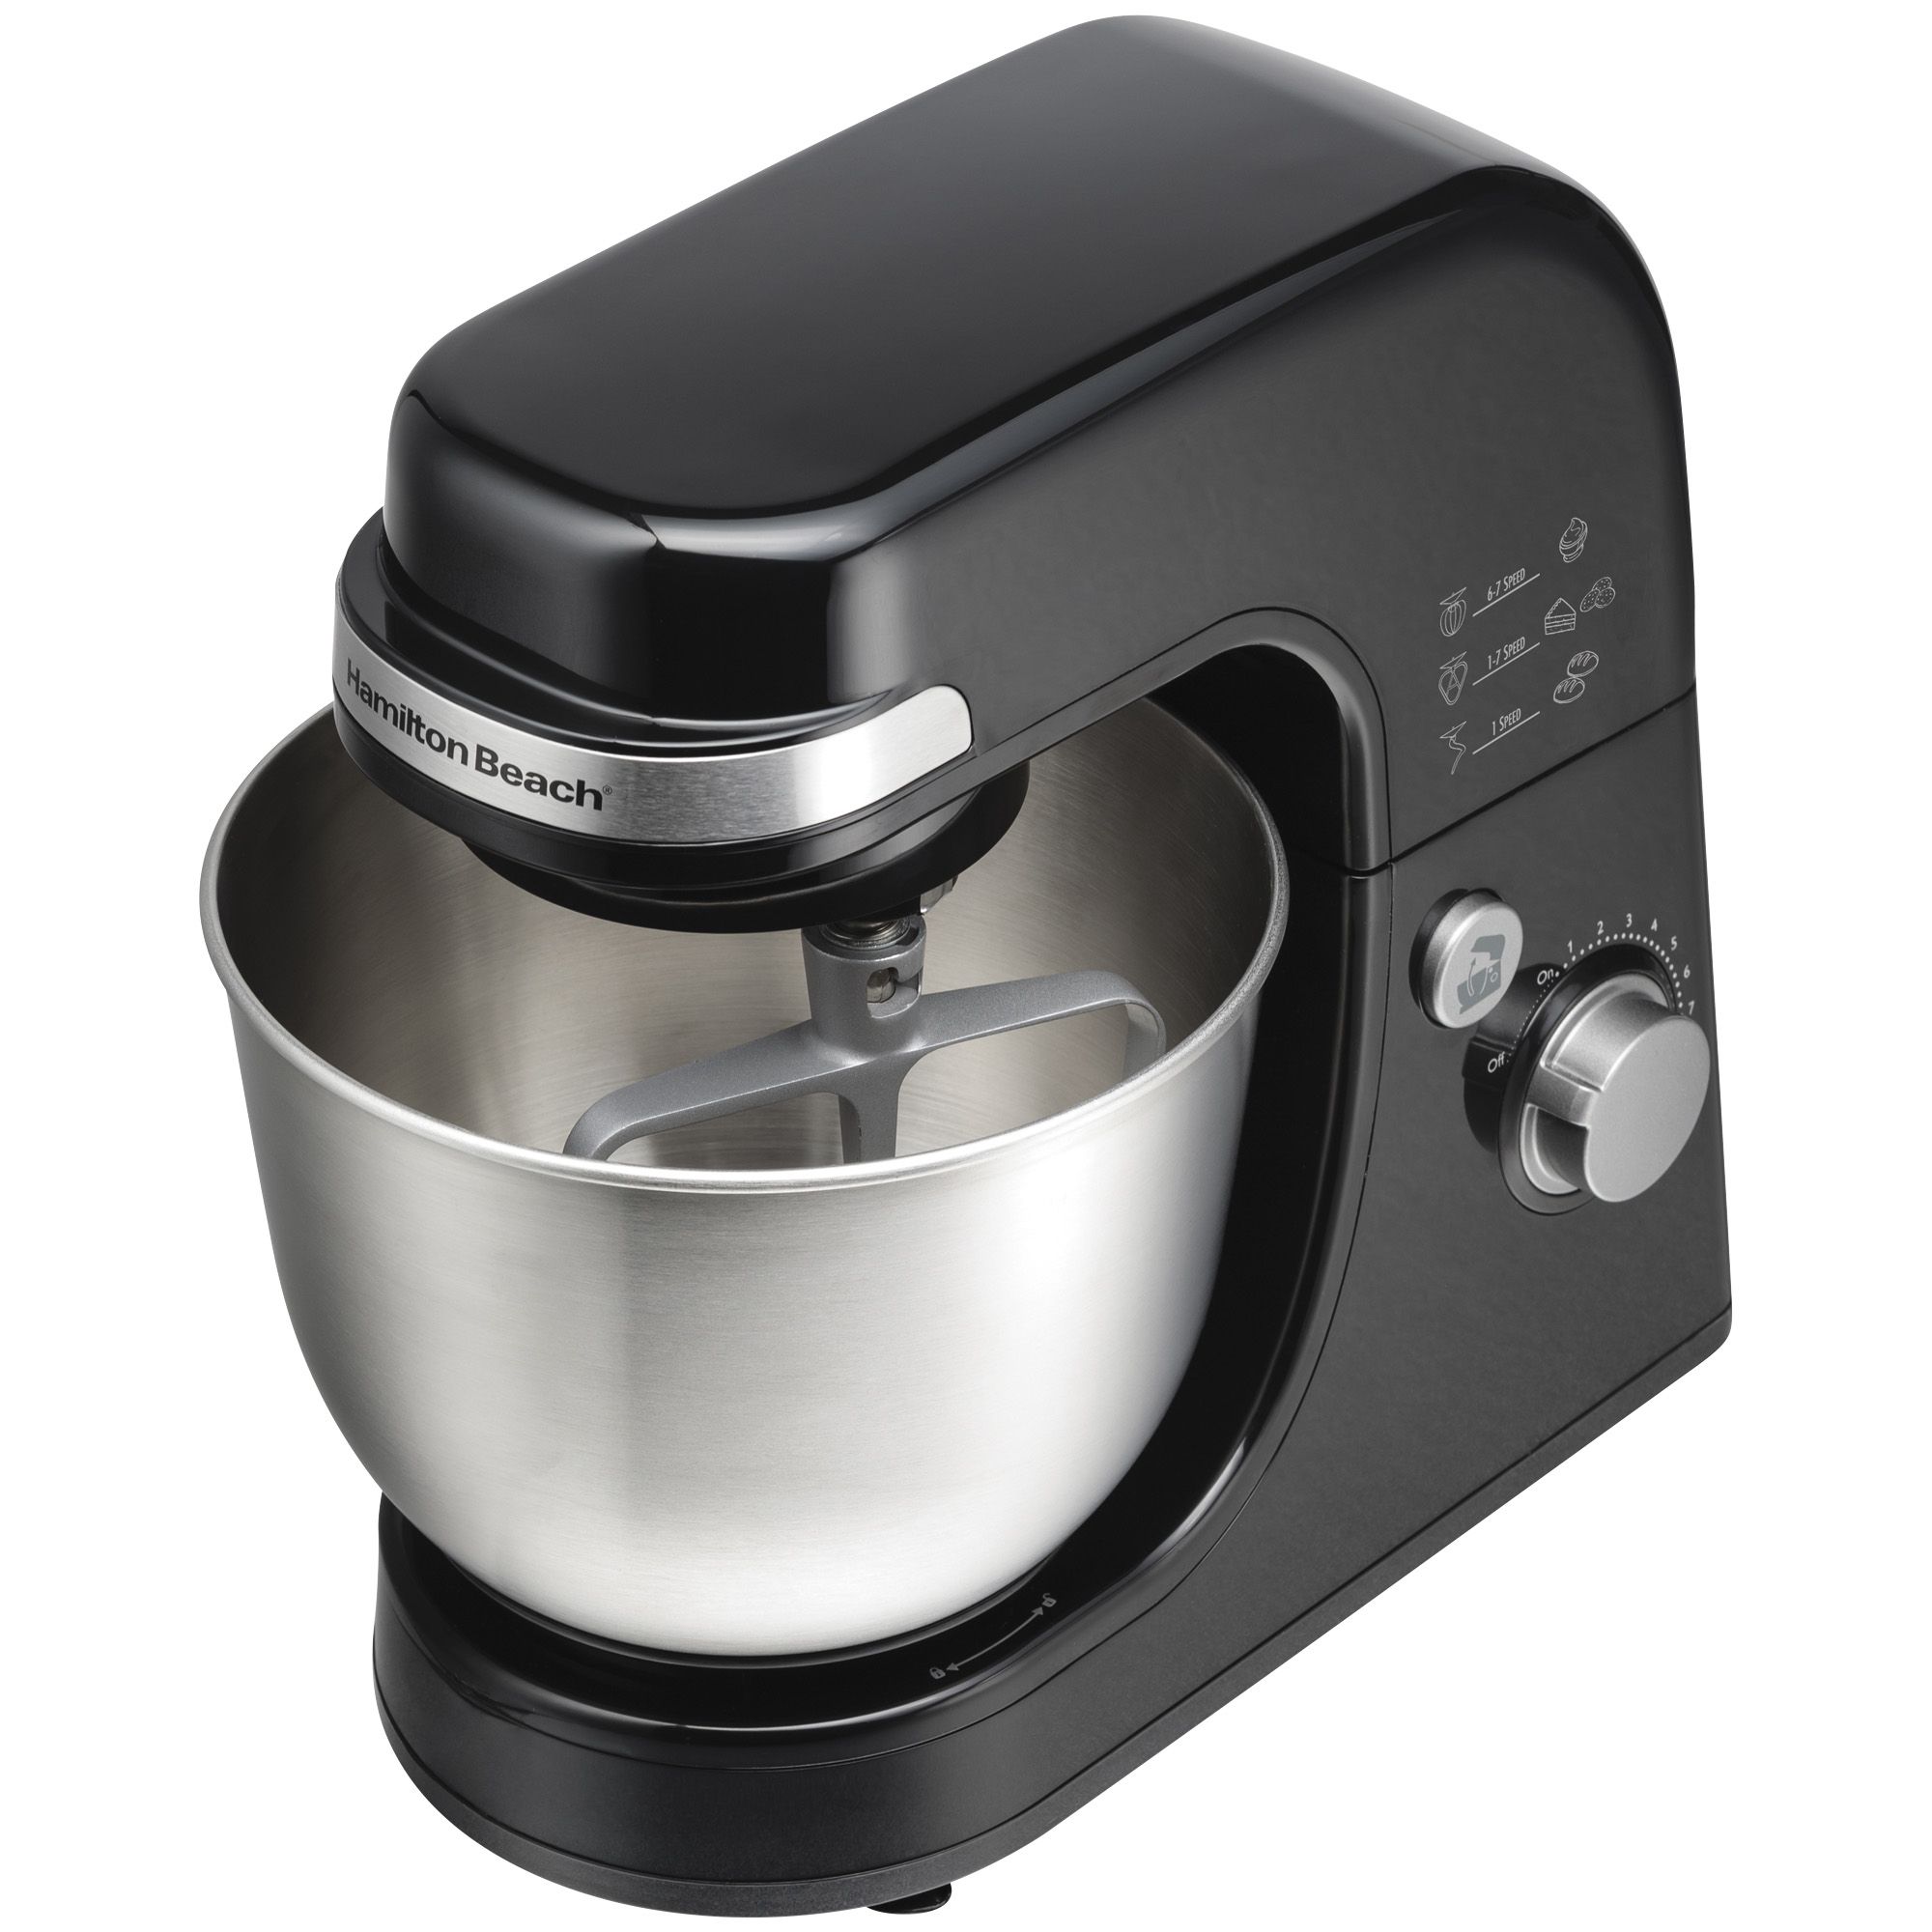 Fingerhut - Cuisinart Precision Master 5.5-Qt. 12-Speed Stand Mixer